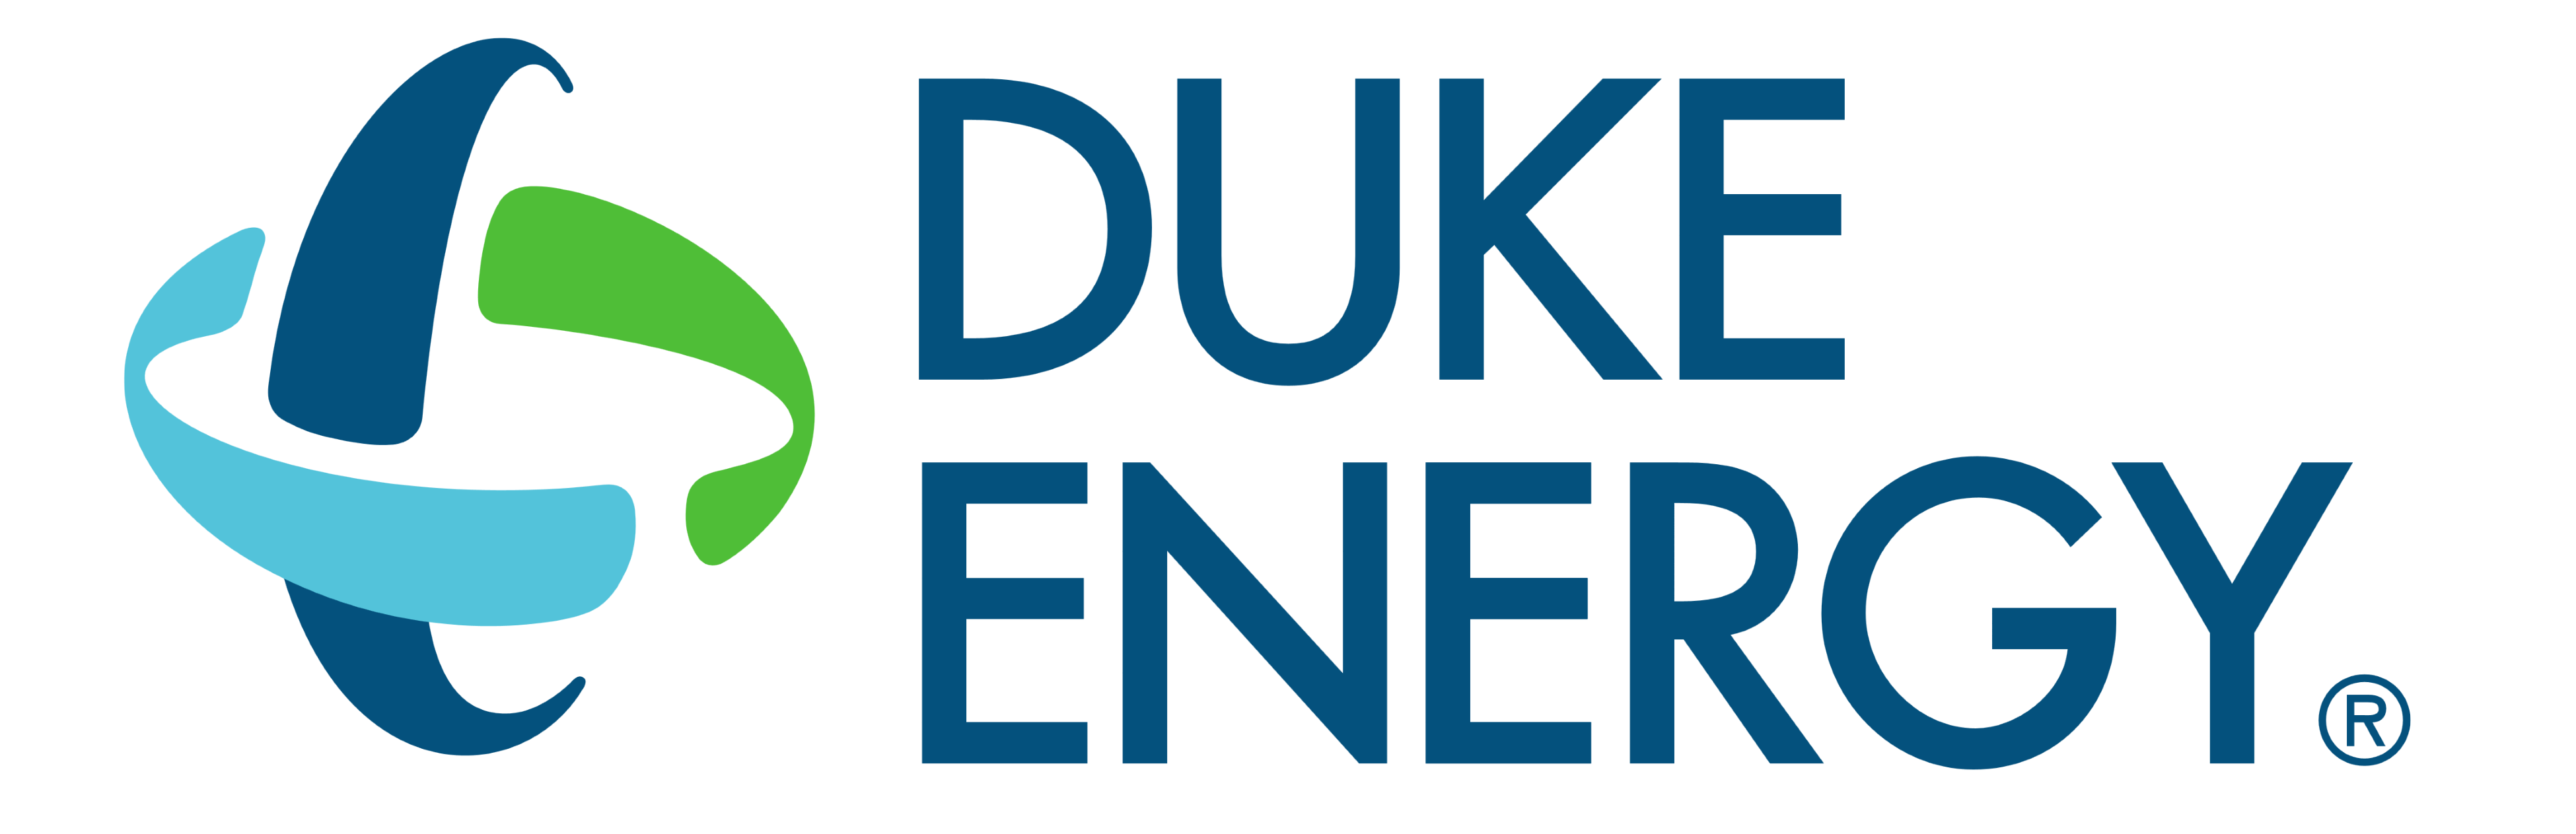 Duke Energy